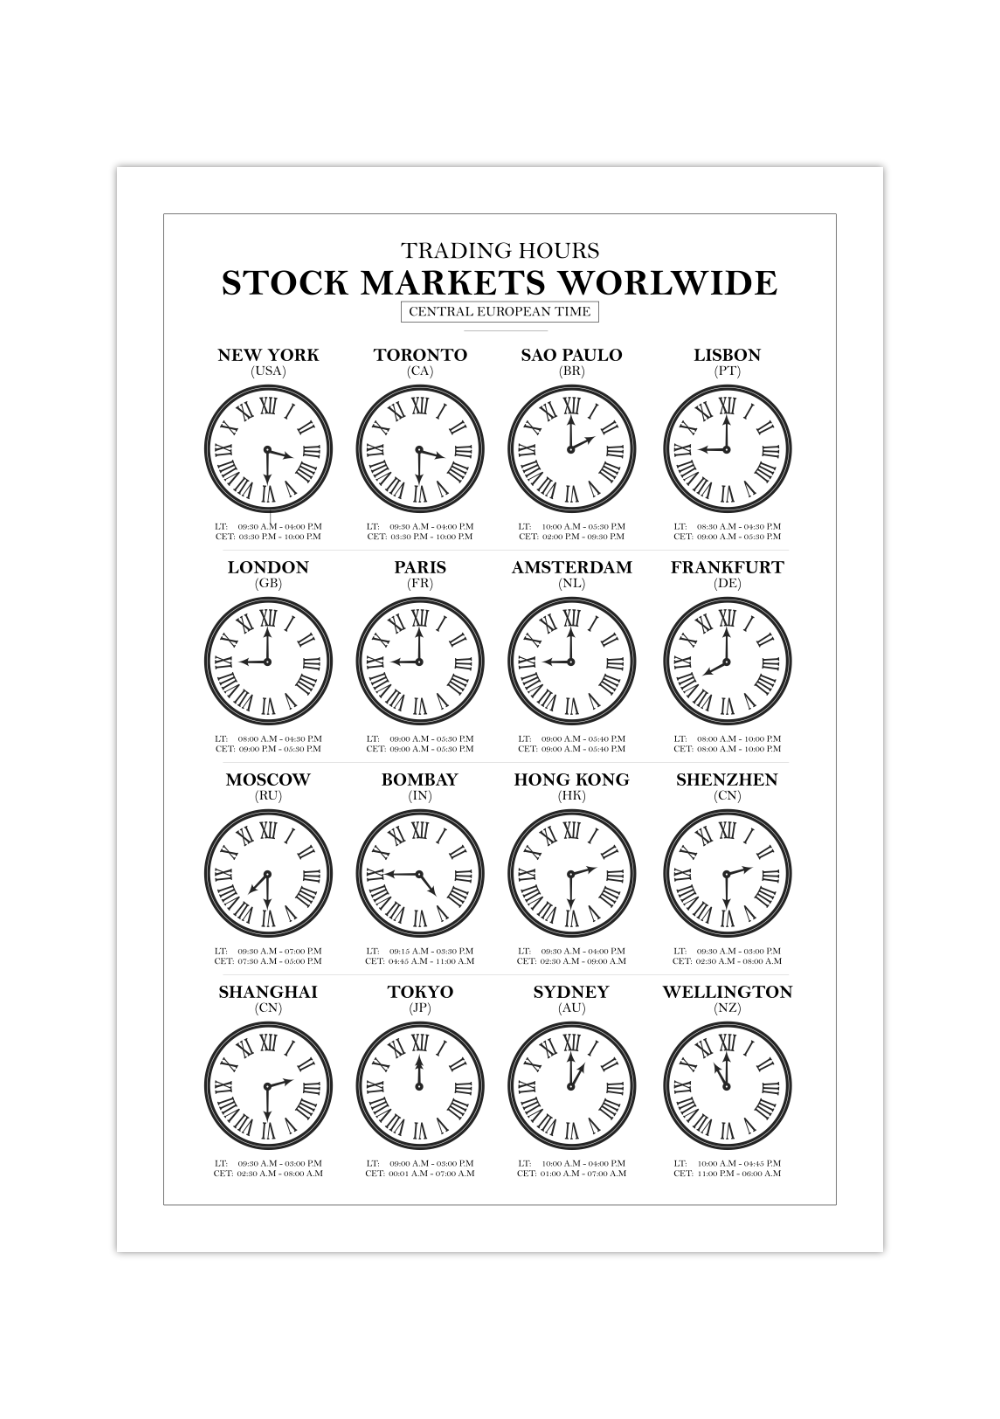 Dieses Aktienposter zeigt die Handelszeiten der verschiedenen Aktienmärkte weltweit.